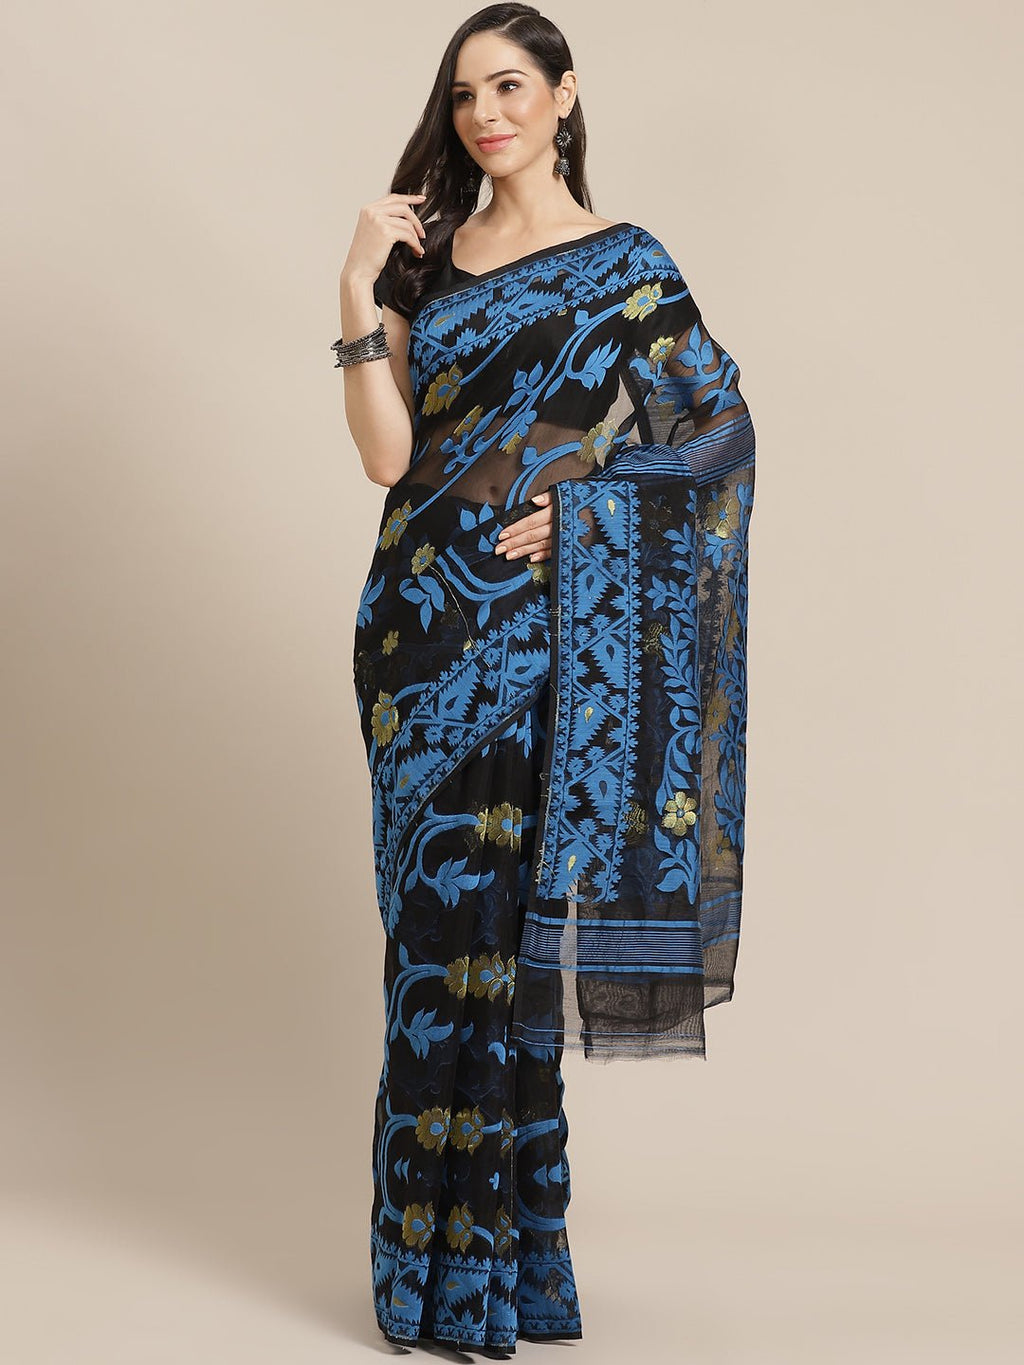 Black and Blue, Kalakari India Jamdani Silk Cotton Woven Design Saree without blouse CHBHSA0034 - Kalakari India